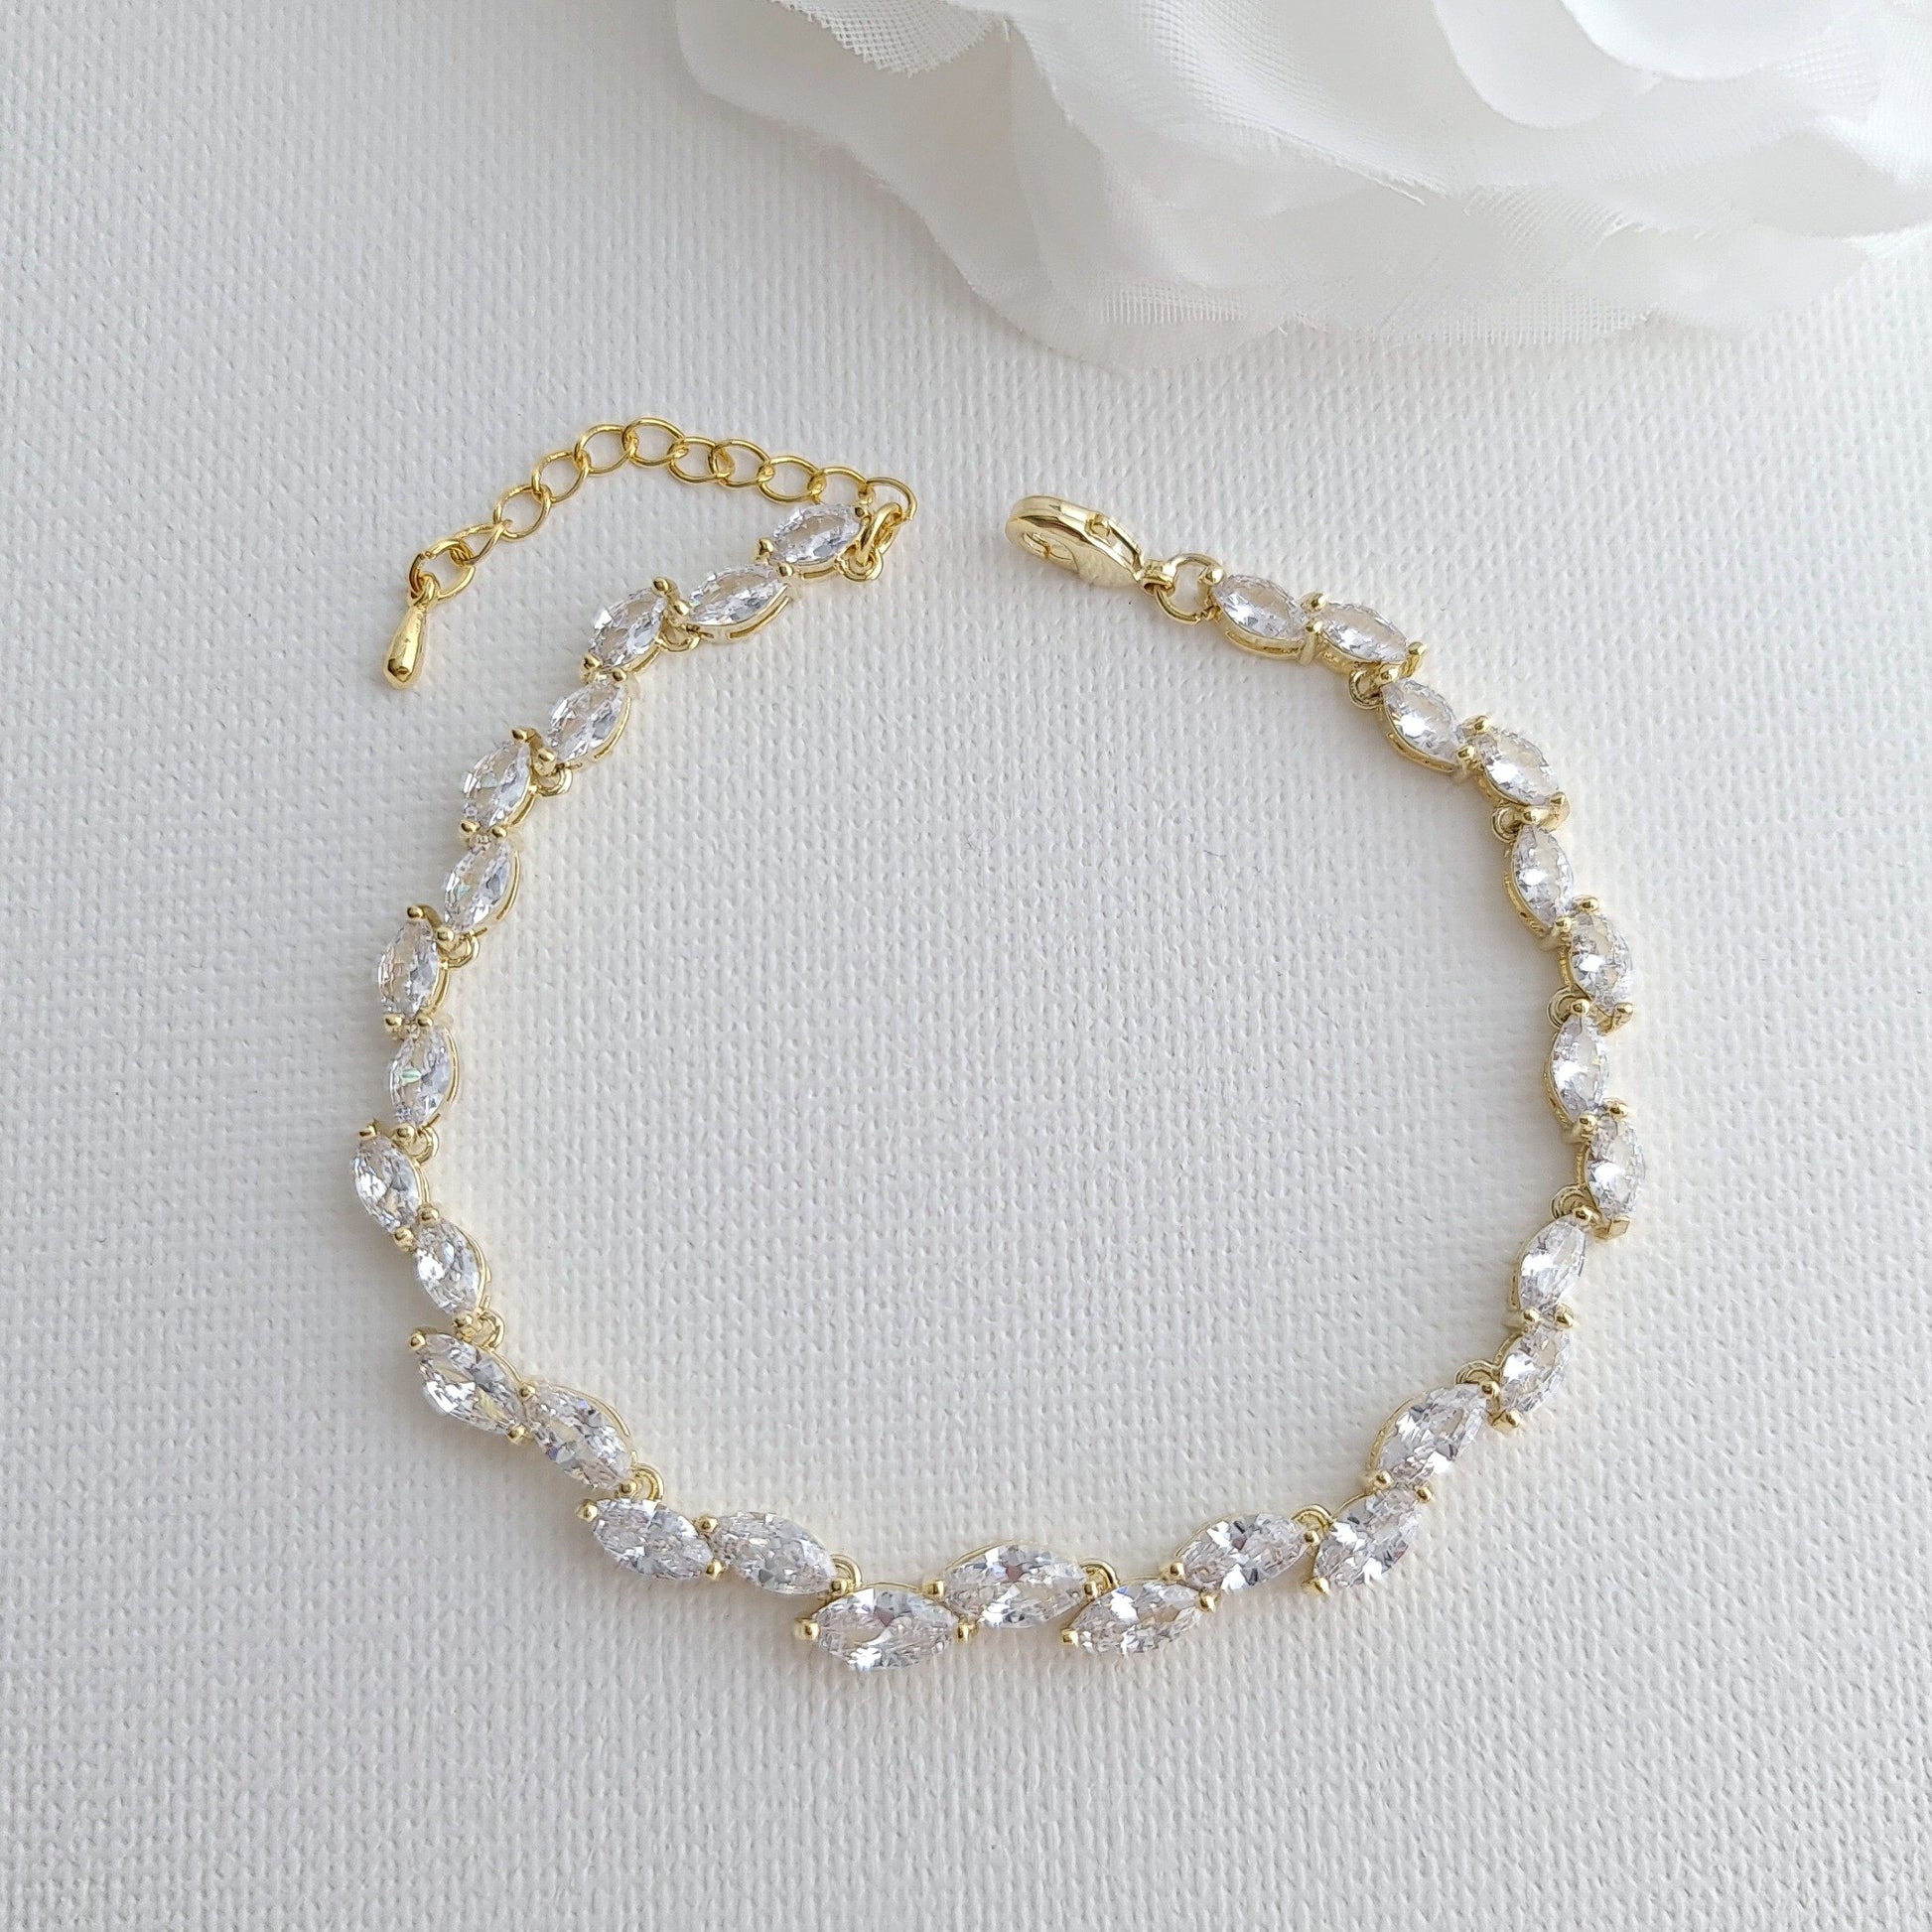 Silver Leaf Bracelet for Brides & Weddings in CZ- Belle - PoetryDesigns